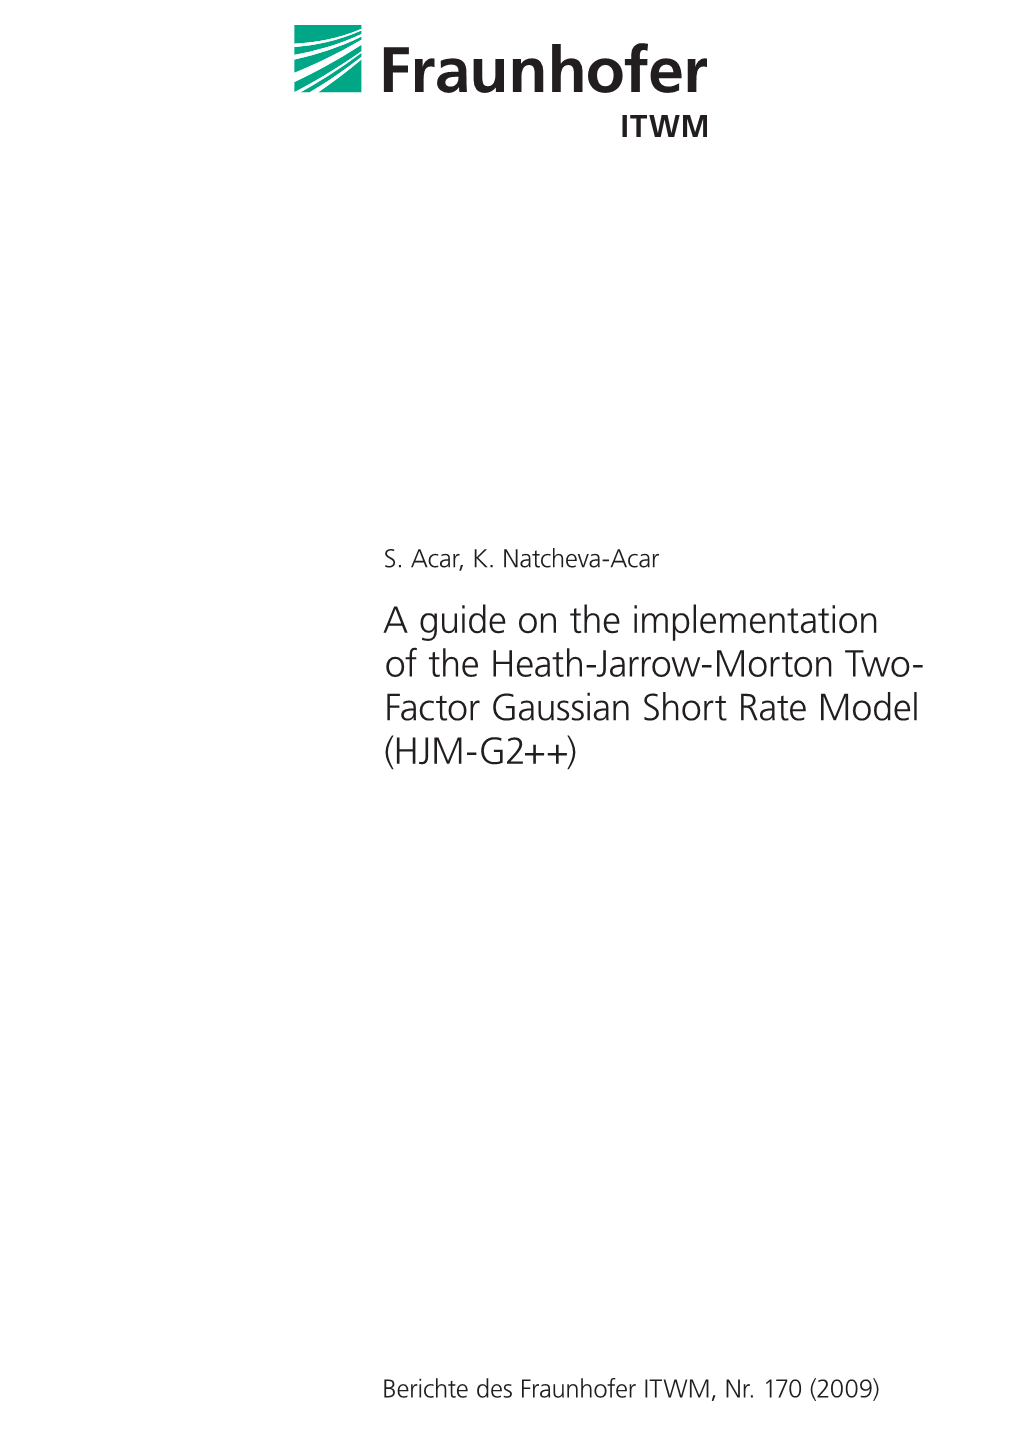 Factor Gaussian Short Rate Model (HJM-G2++)